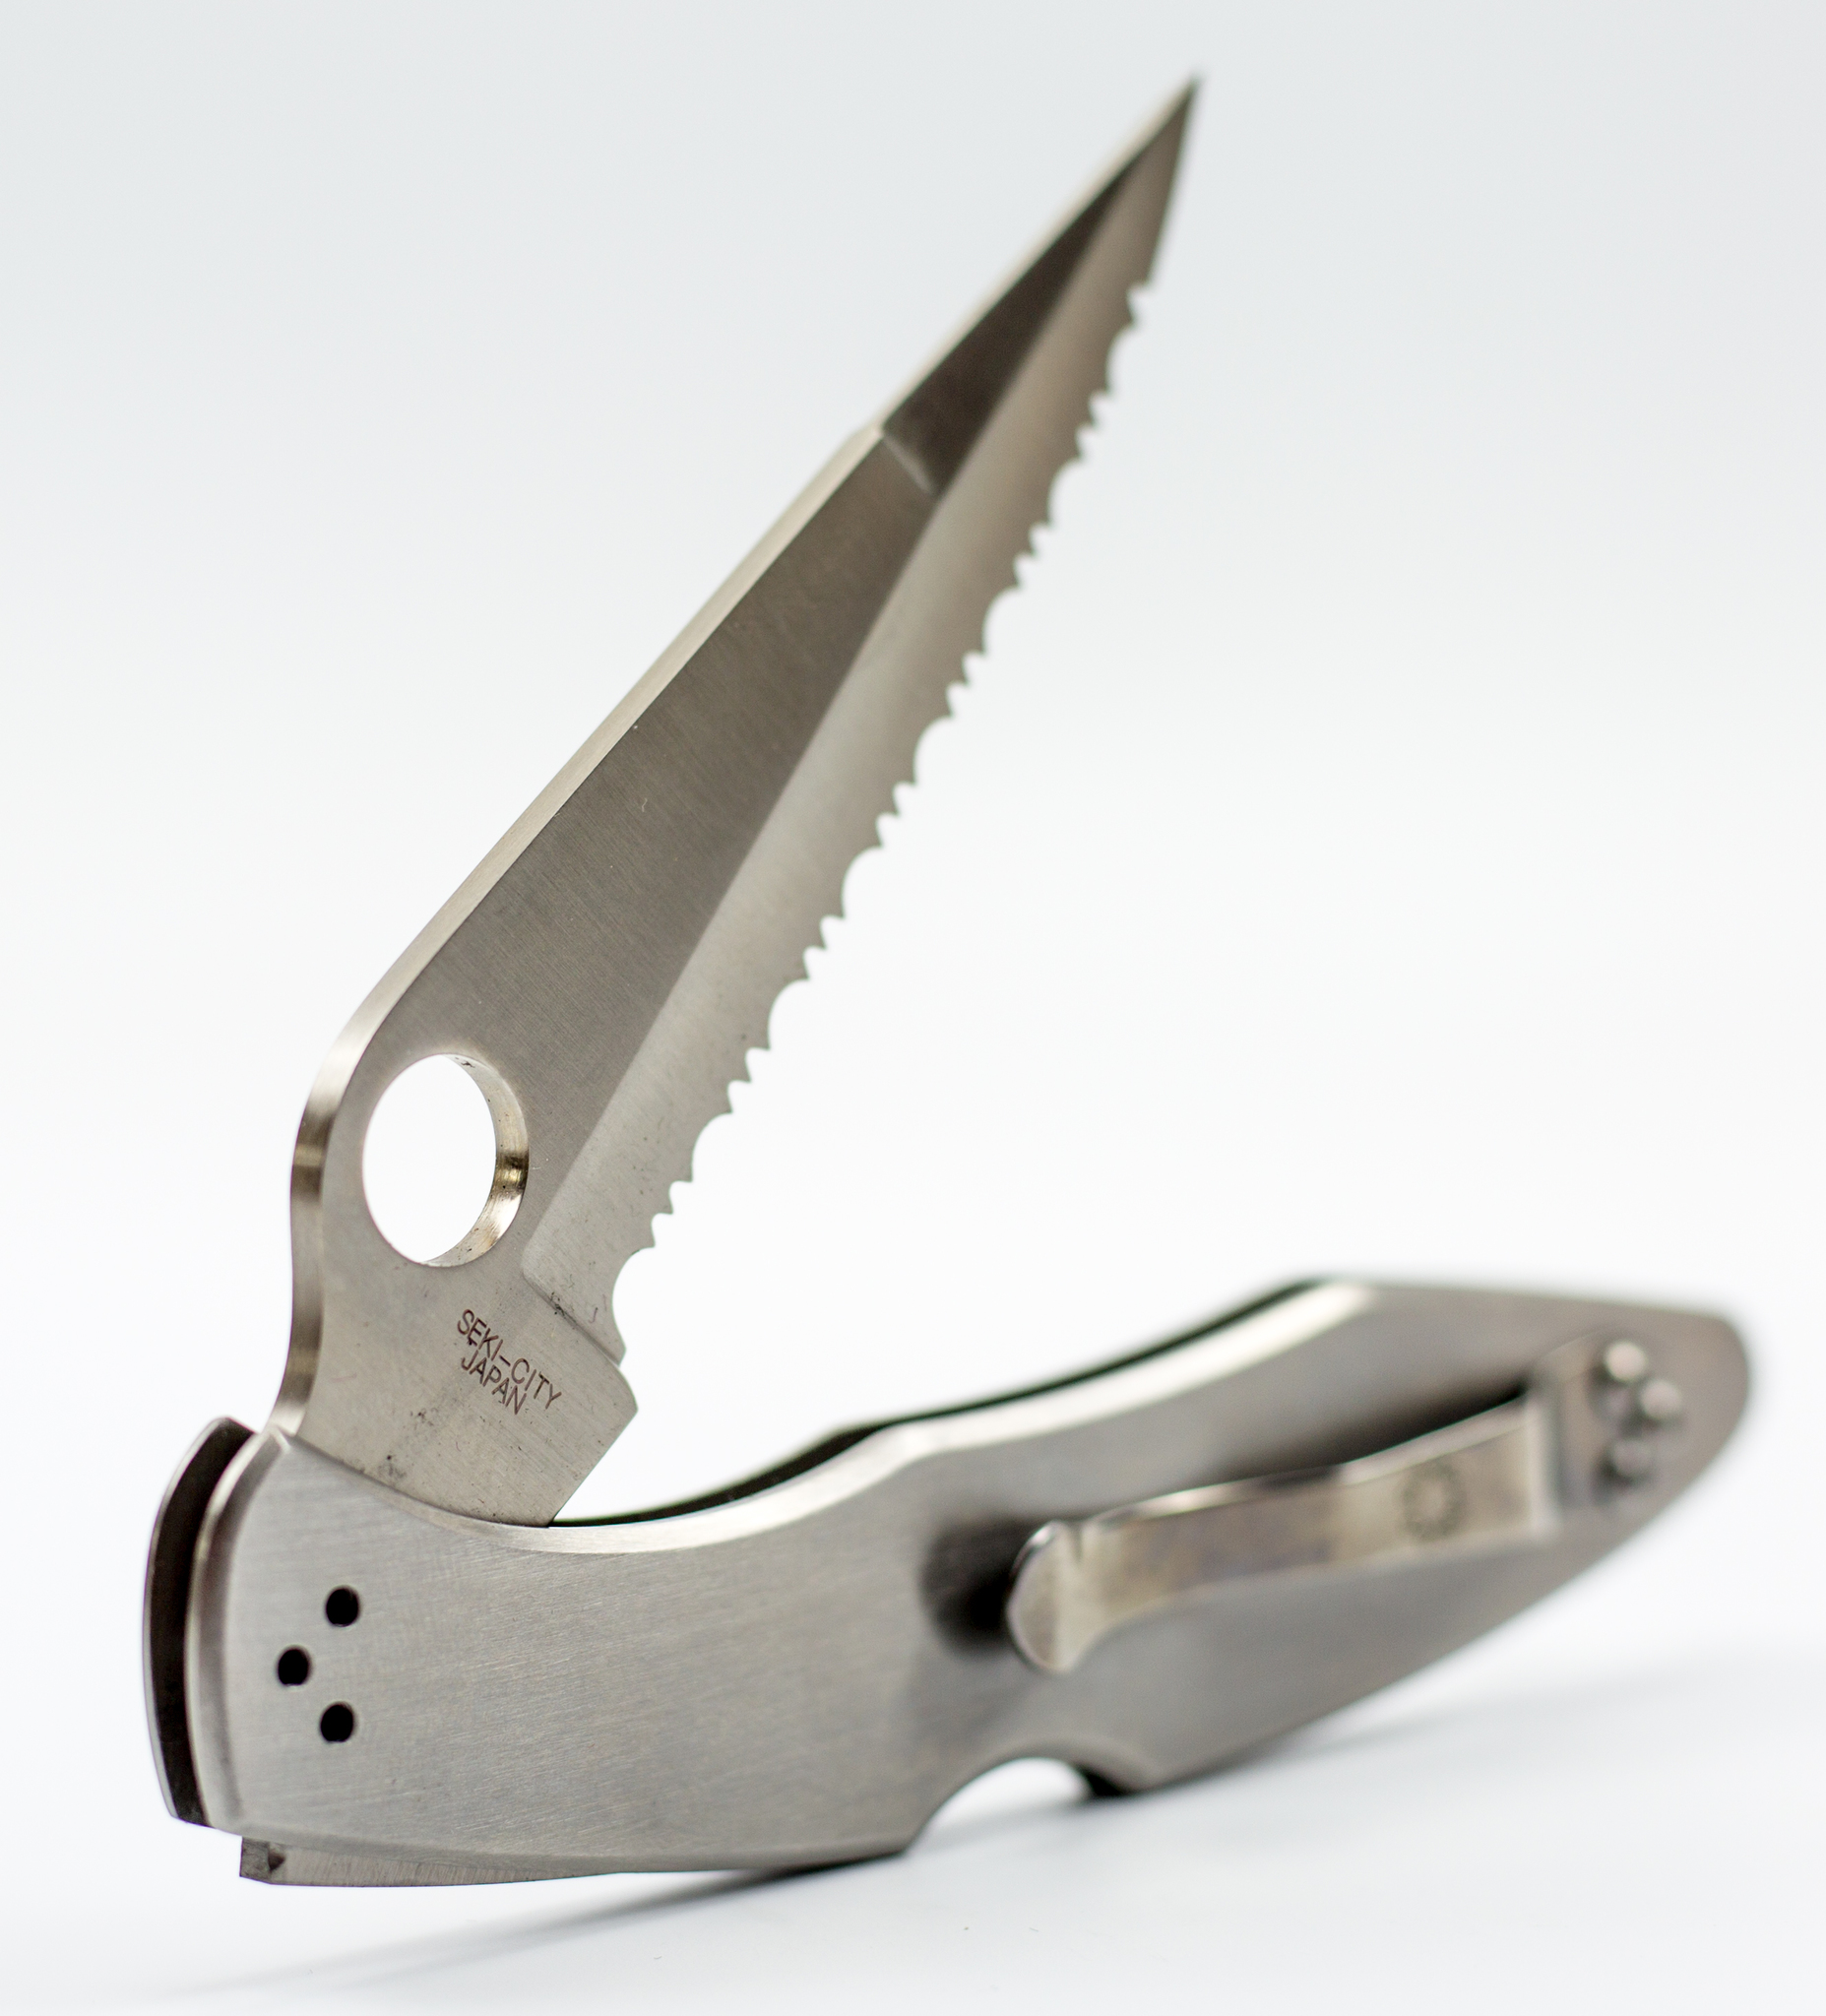 фото Складной нож spyderco police full serrated edge, сталь vg 10, стальная рукоятка